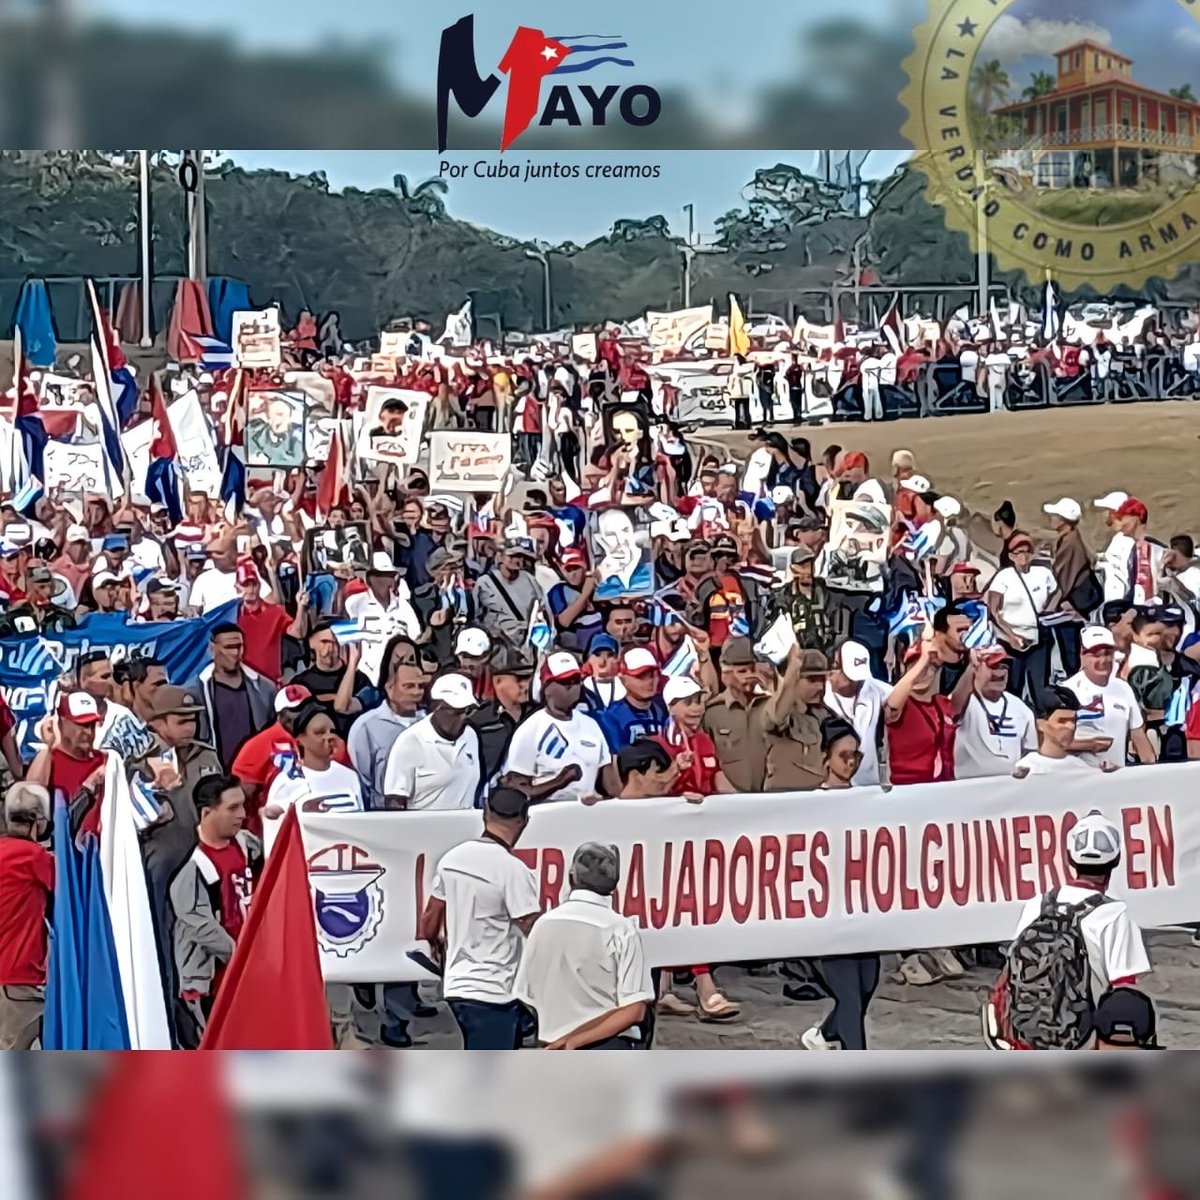 Más de 550 000 holguineros desfilaron este #1roMayo por plazas de todos los municipios de la provincia, en saludo al Día Internacional de los Trabajadores, defendiendo a la Revolución Socialista de #Cuba. ¡Muchas Felicidades al Pueblo! #Holguín de Victorias #PorCubaJuntosCreamos